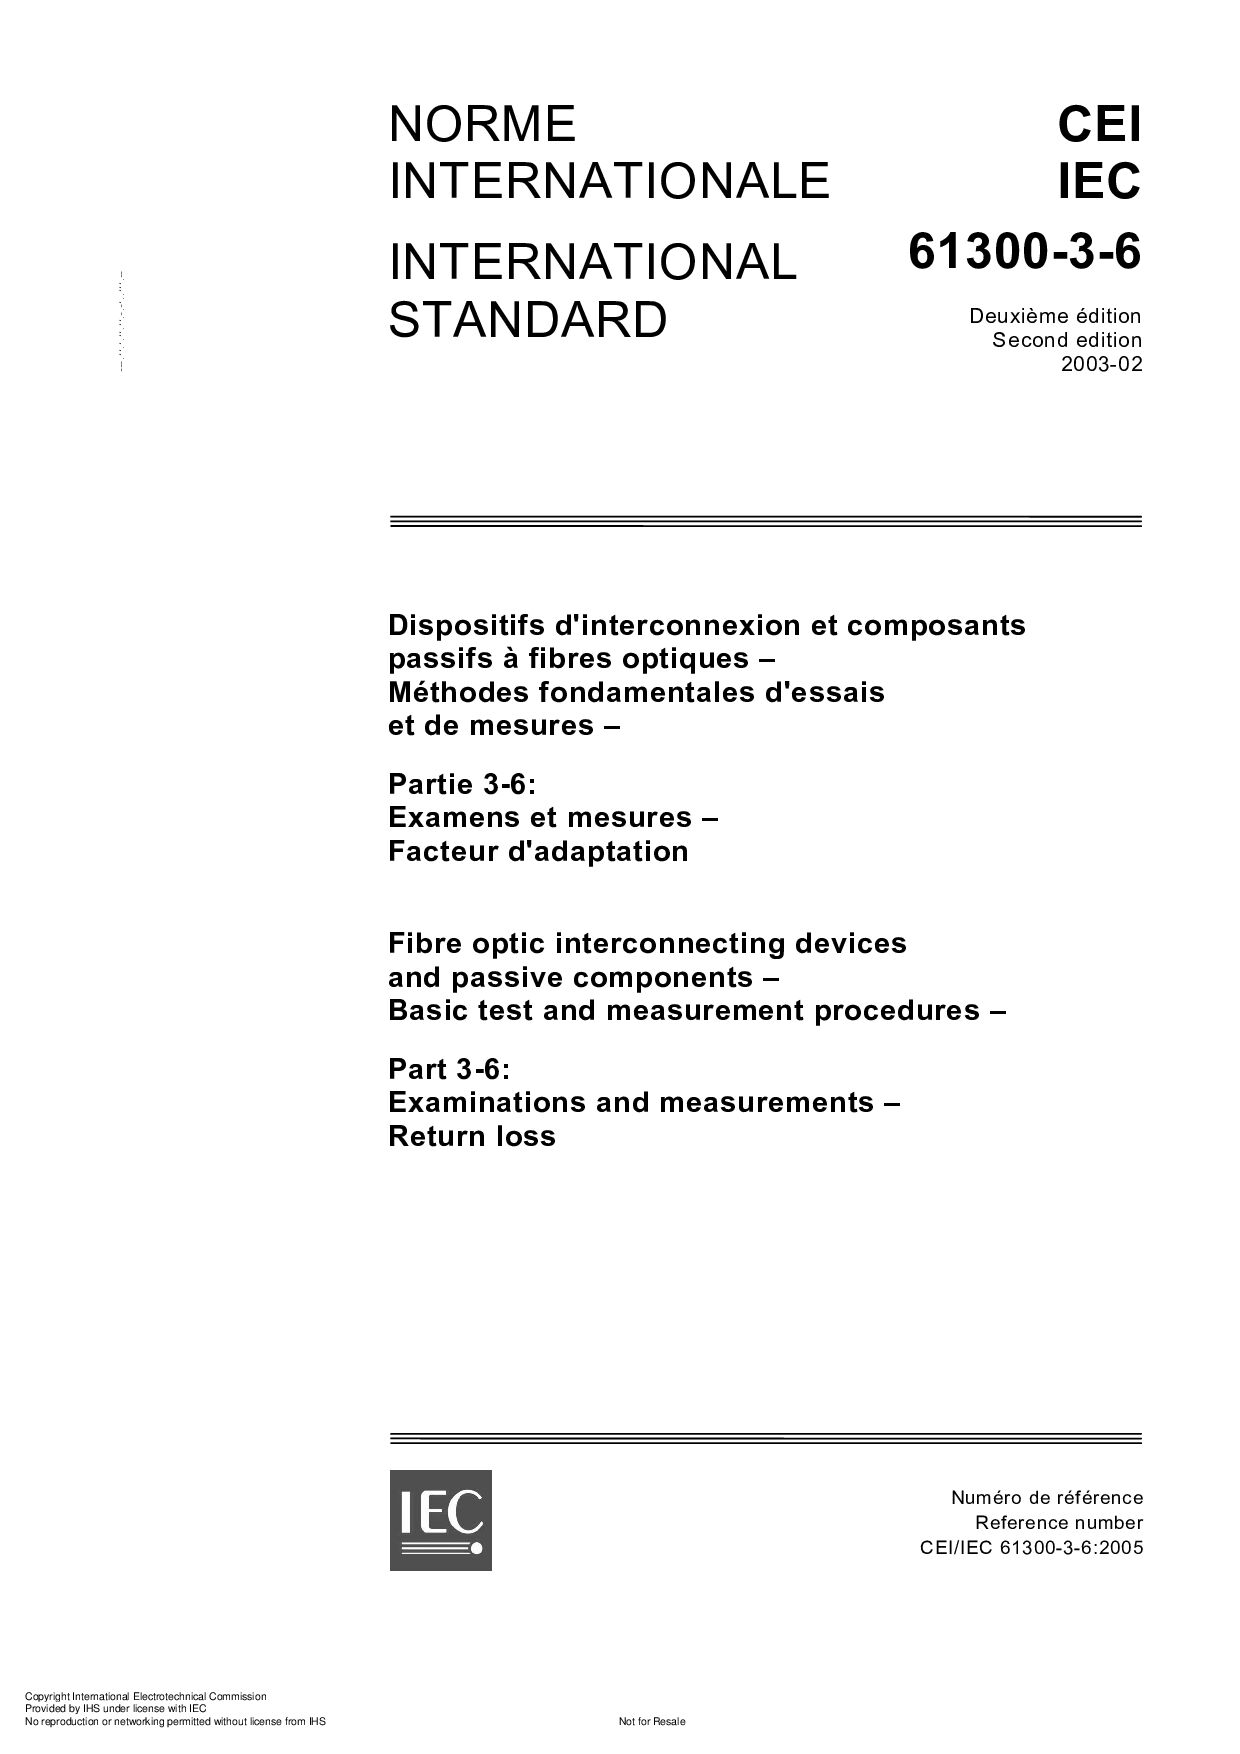 IEC 61300-3-6:2003